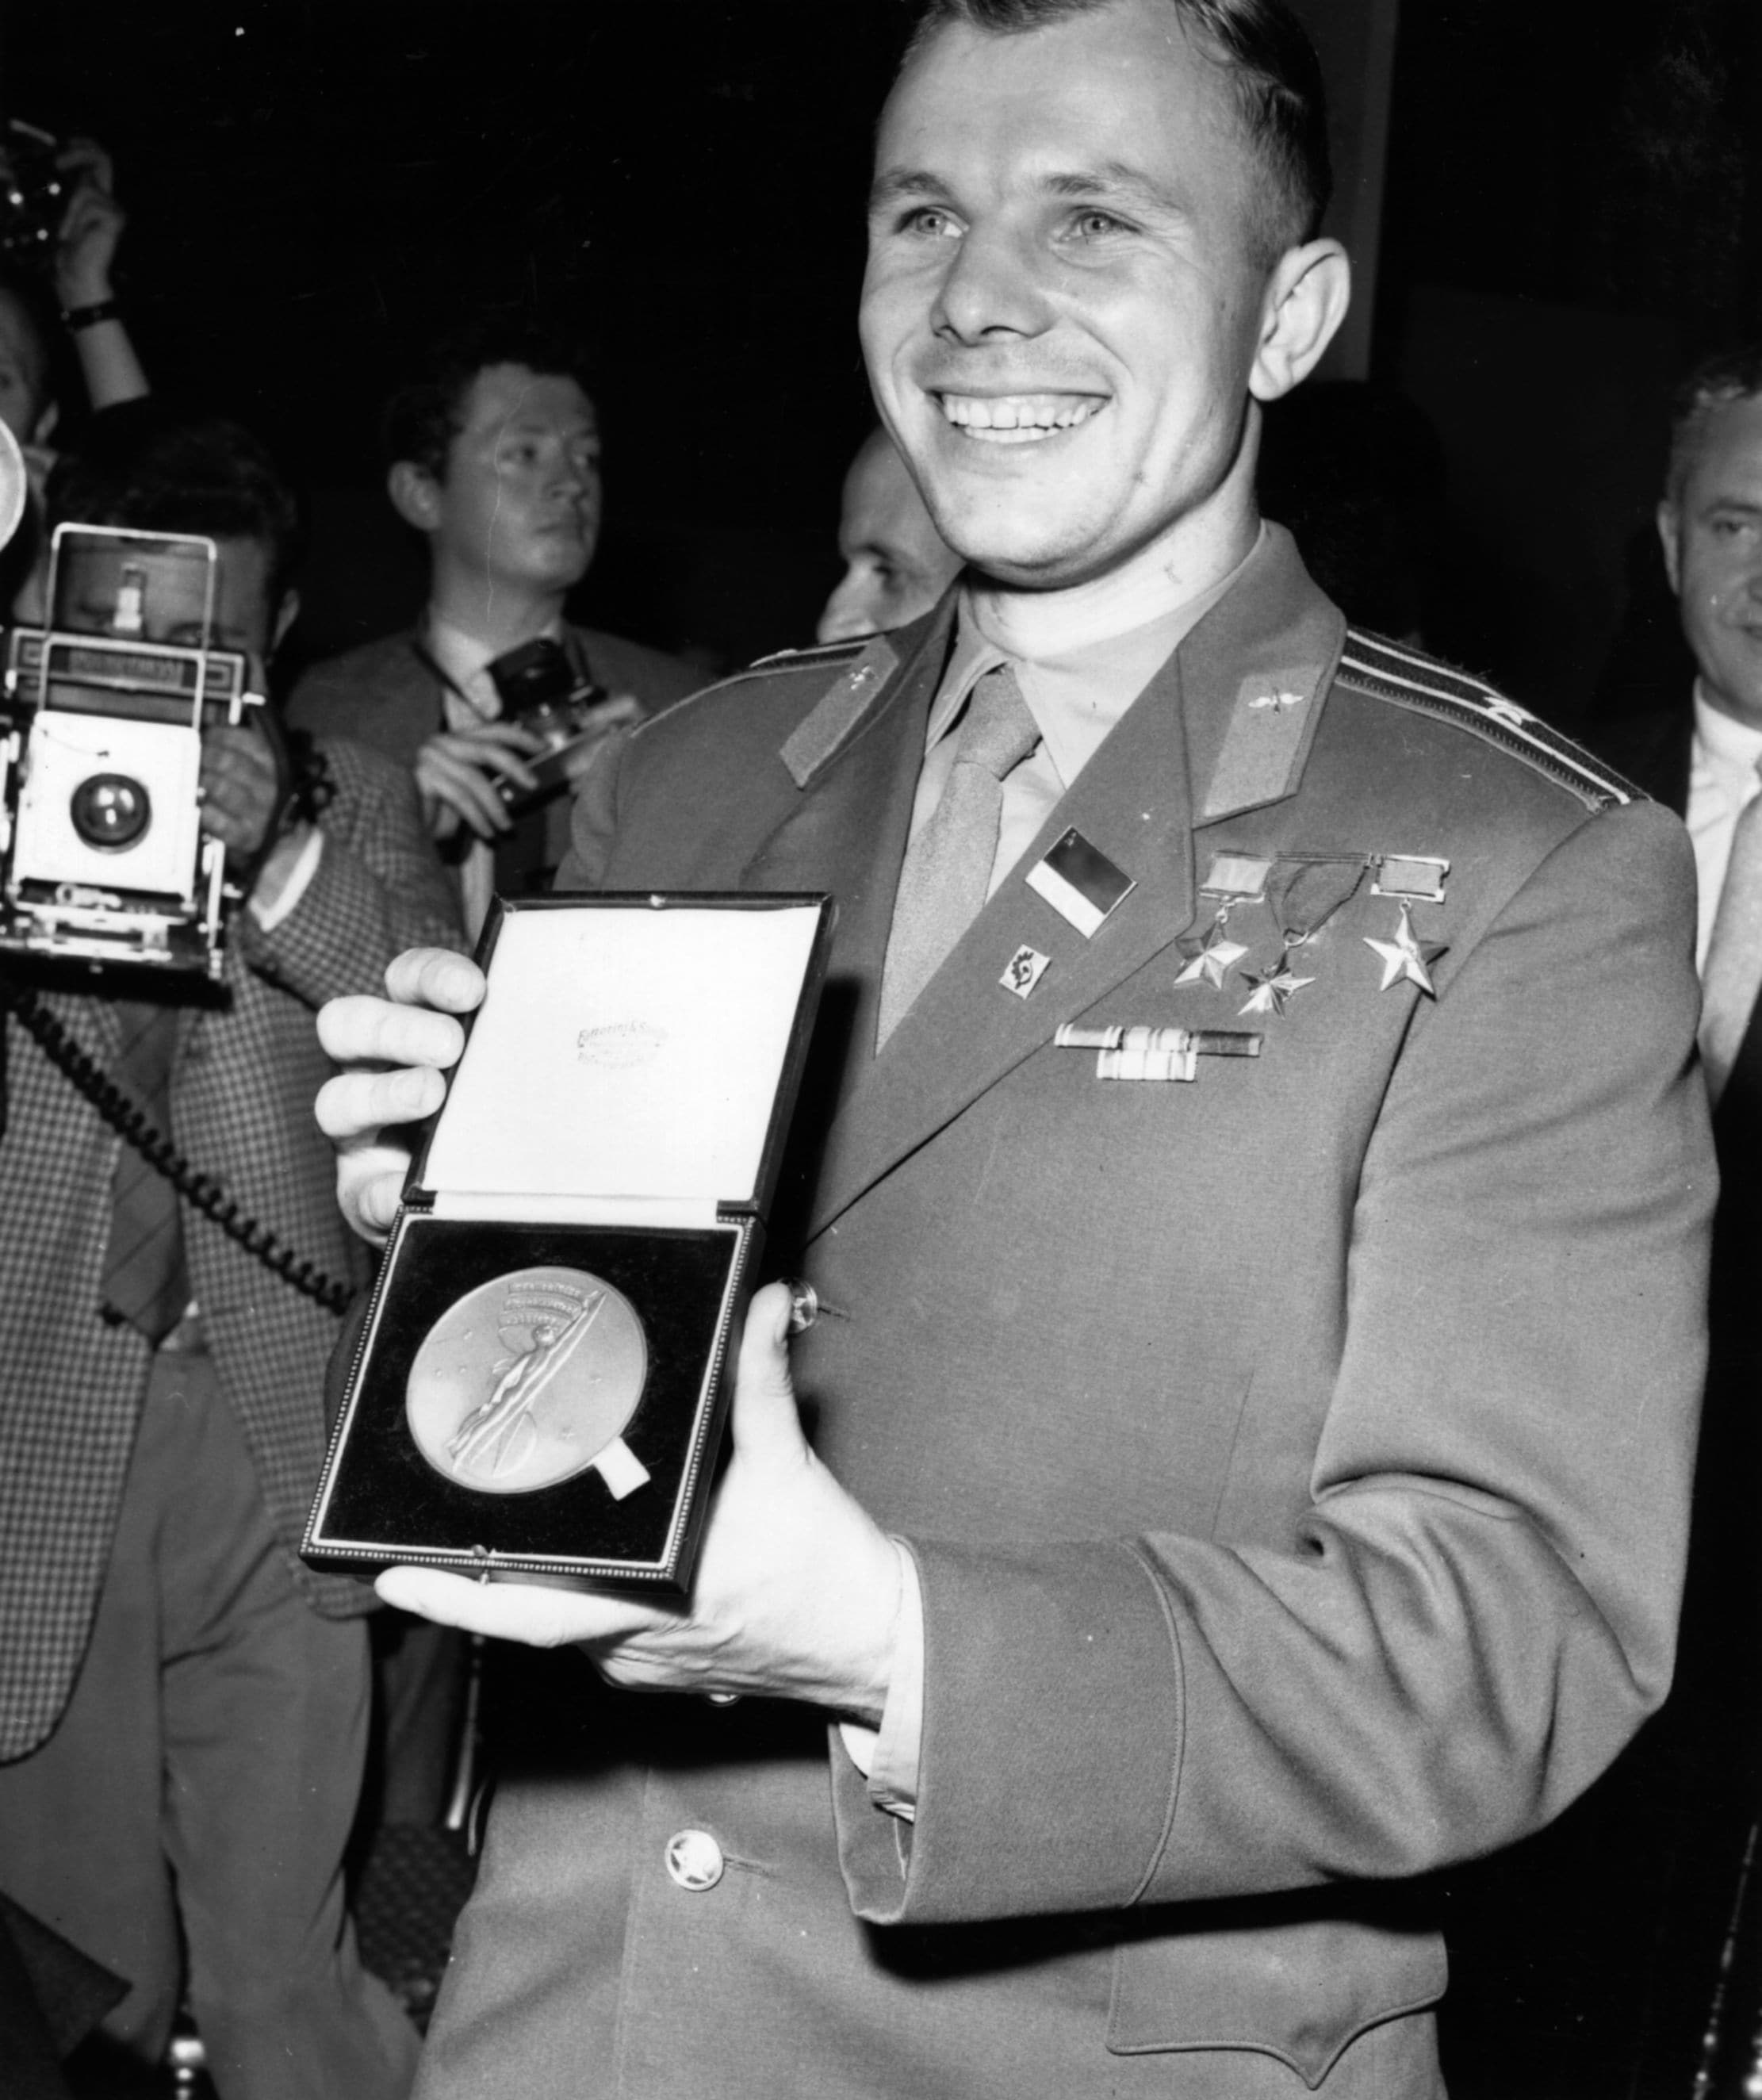 Gagarin mentre ritira una medaglia assegnatagli dalla British Interplanetary Society, a riprova della sua fama internazionale rapidamente acquisita dopo il volo nello spazio